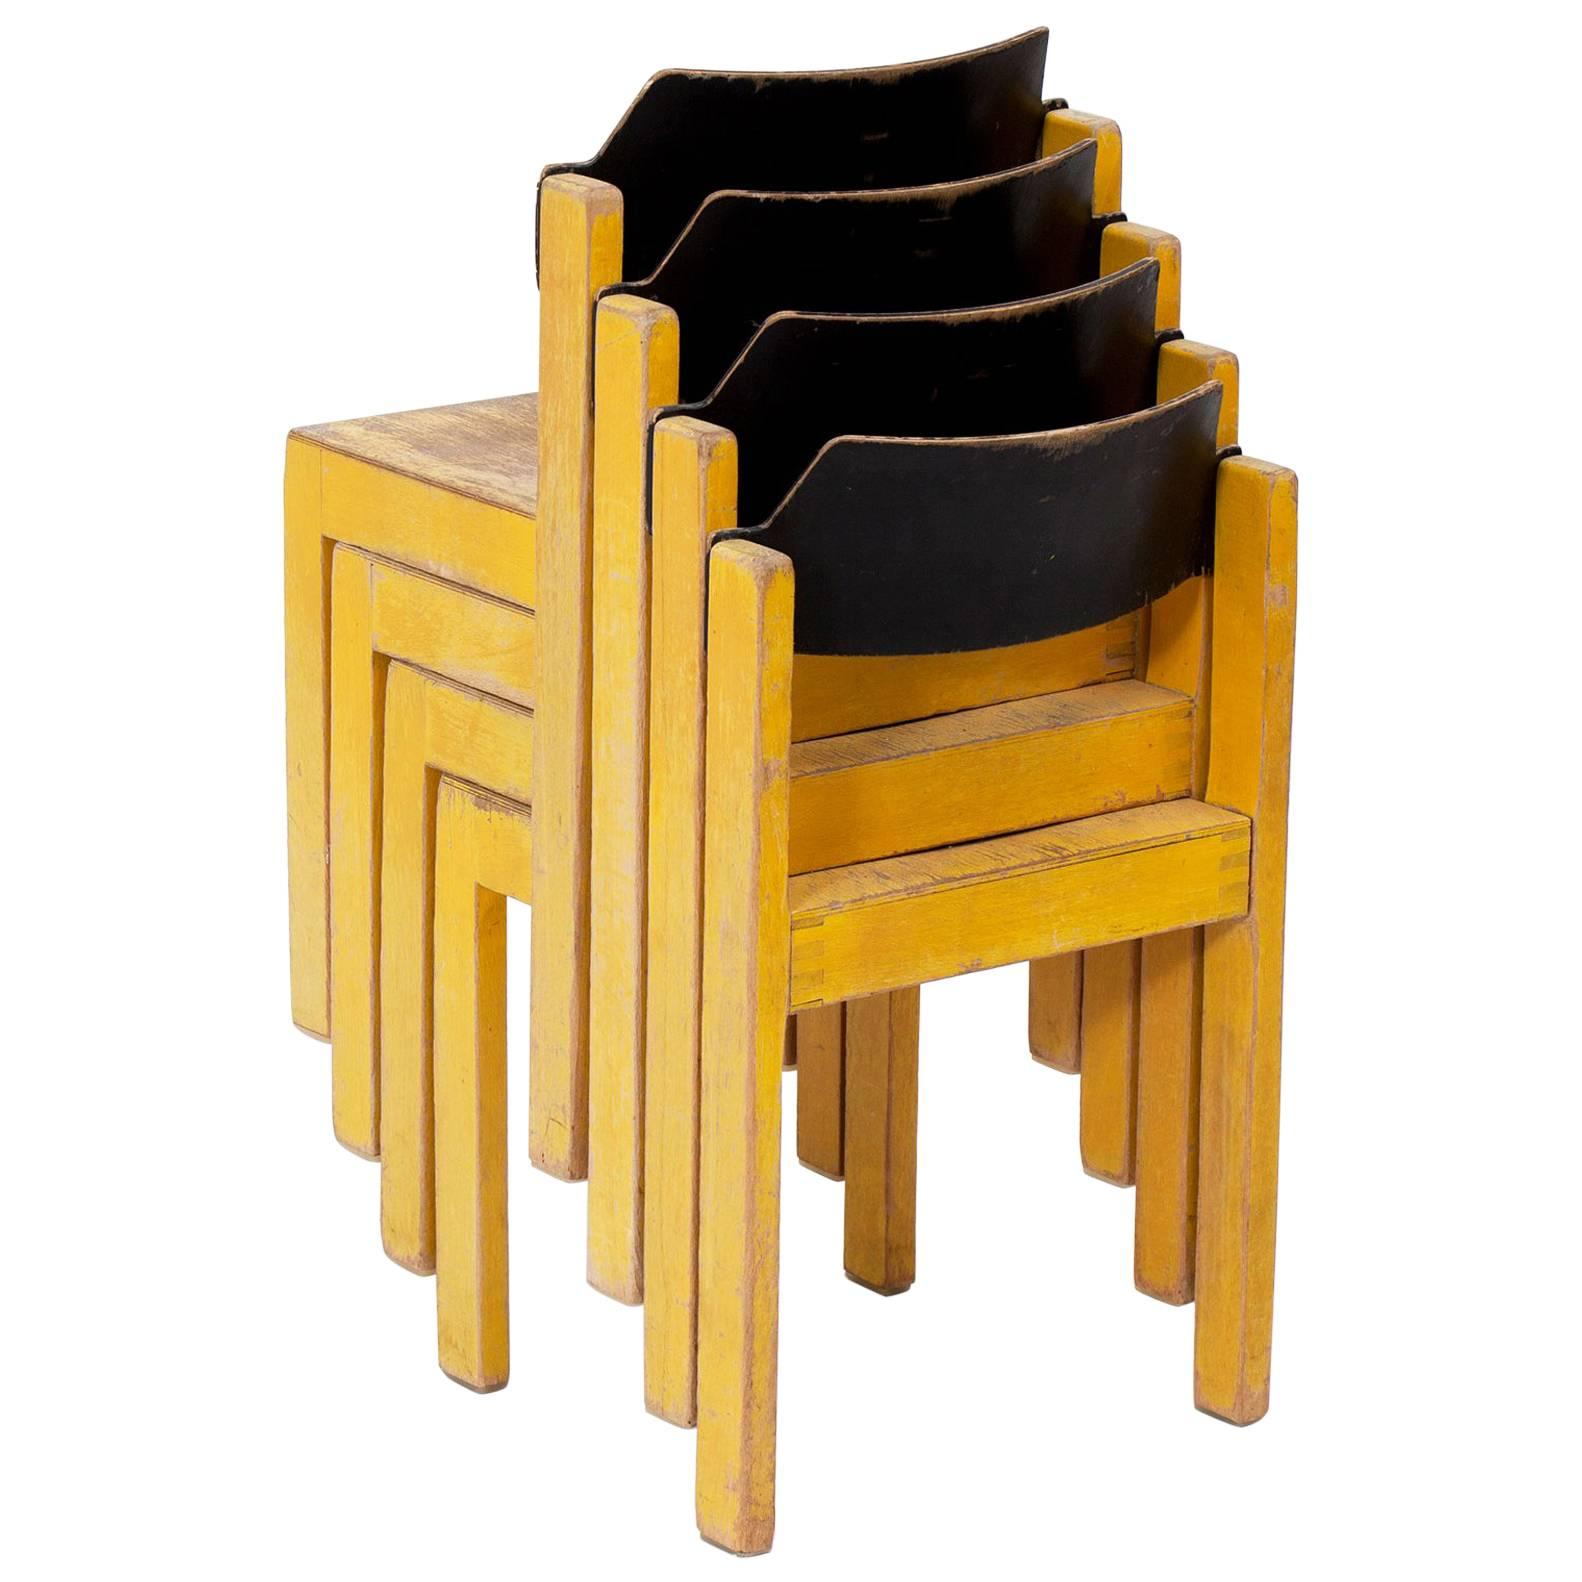 Midcentury German Stackable Yellow Wooden Children's Chairs